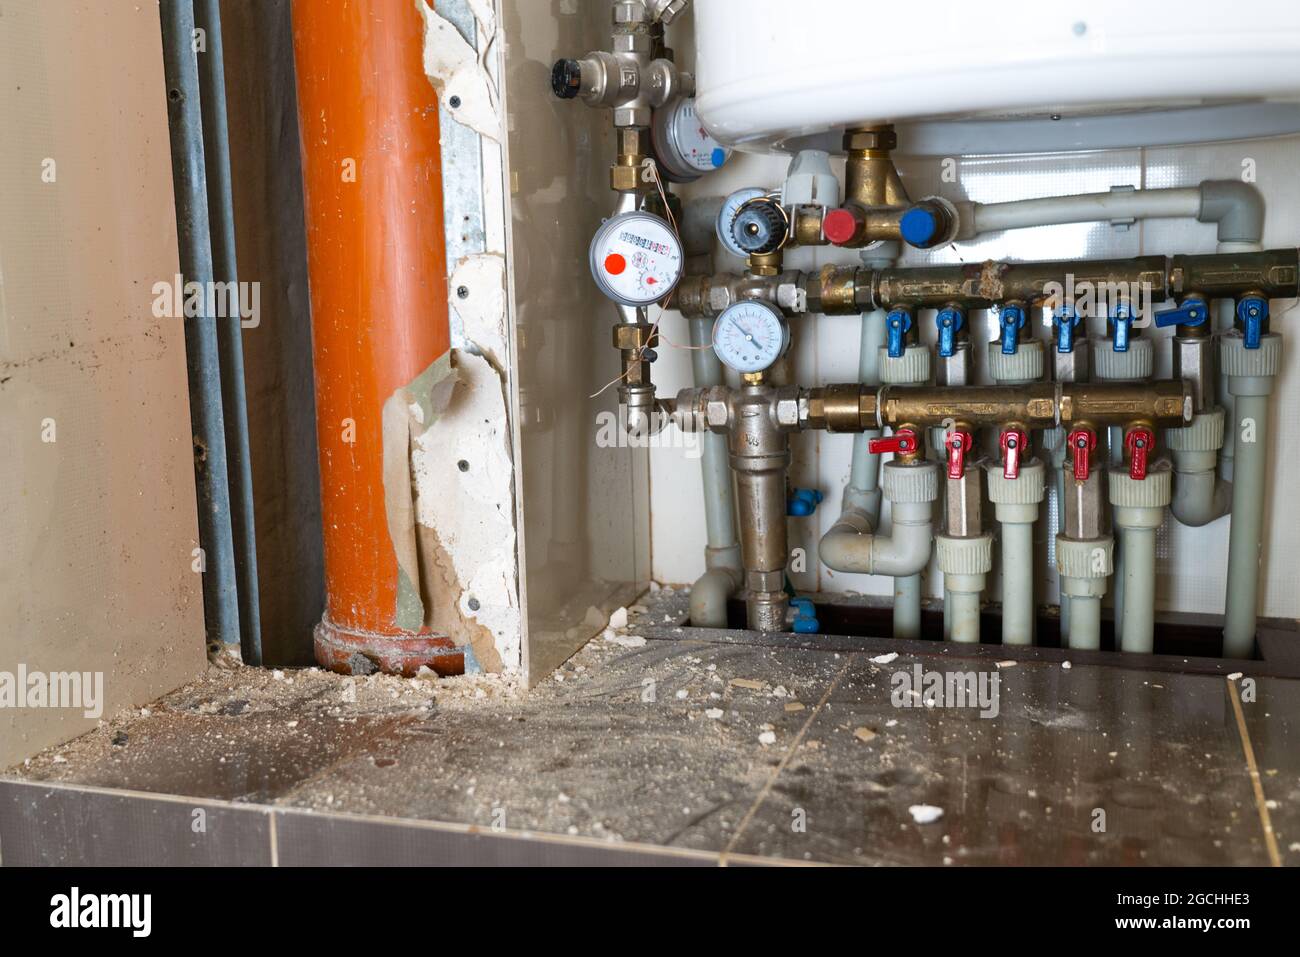 un système complexe de distribution d'eau dans les toilettes pendant les réparations pour remplacer le surmontoir et les tuyaux. Système de tuyauterie complexe avec tuyaux d'eau chaude et froide W Banque D'Images